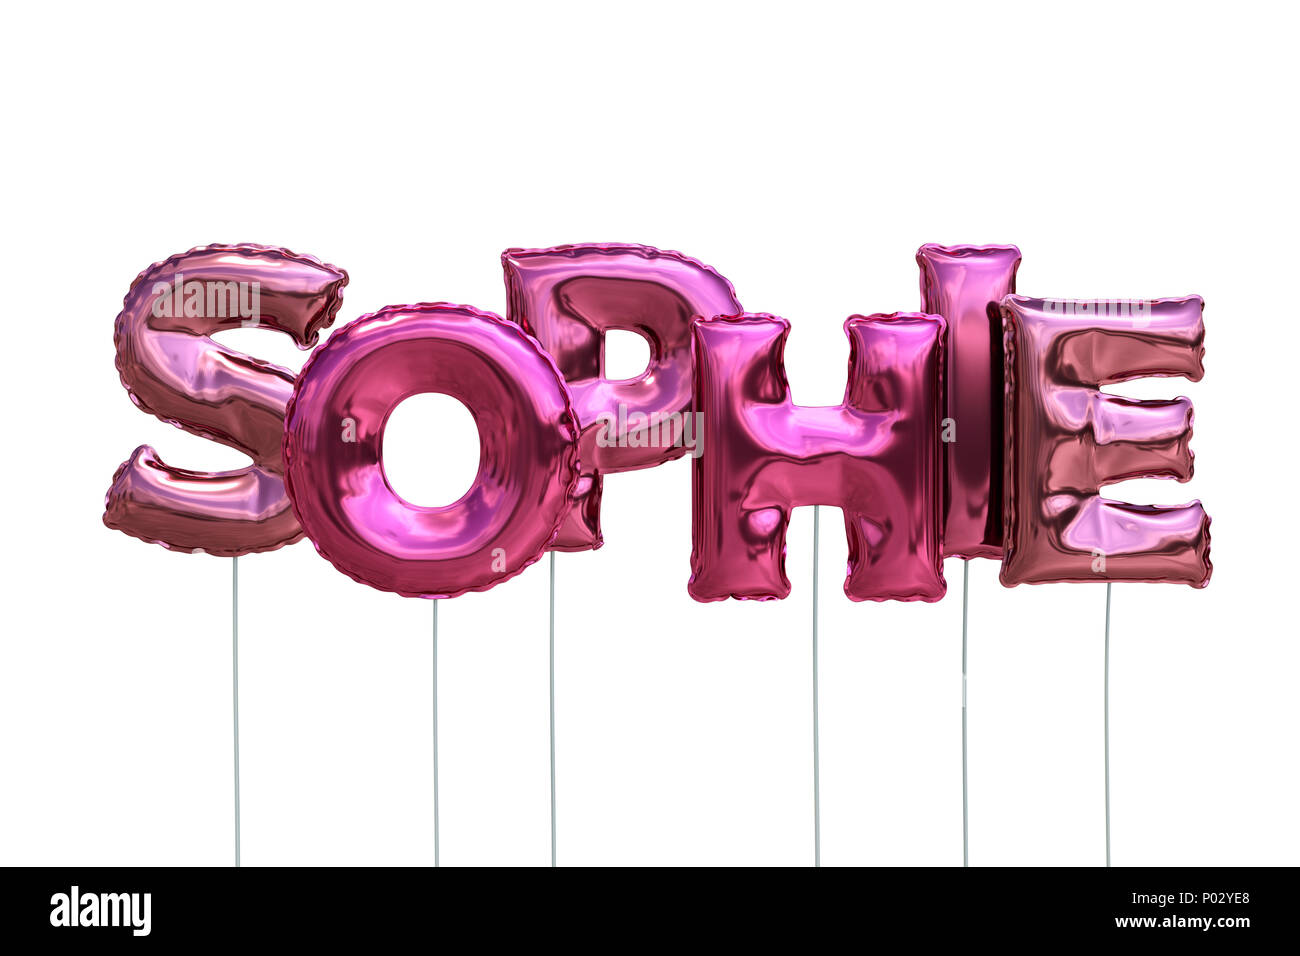 Name Sophie aus rosa Aufblasbare Ballone auf weißem Hintergrund  Stockfotografie - Alamy